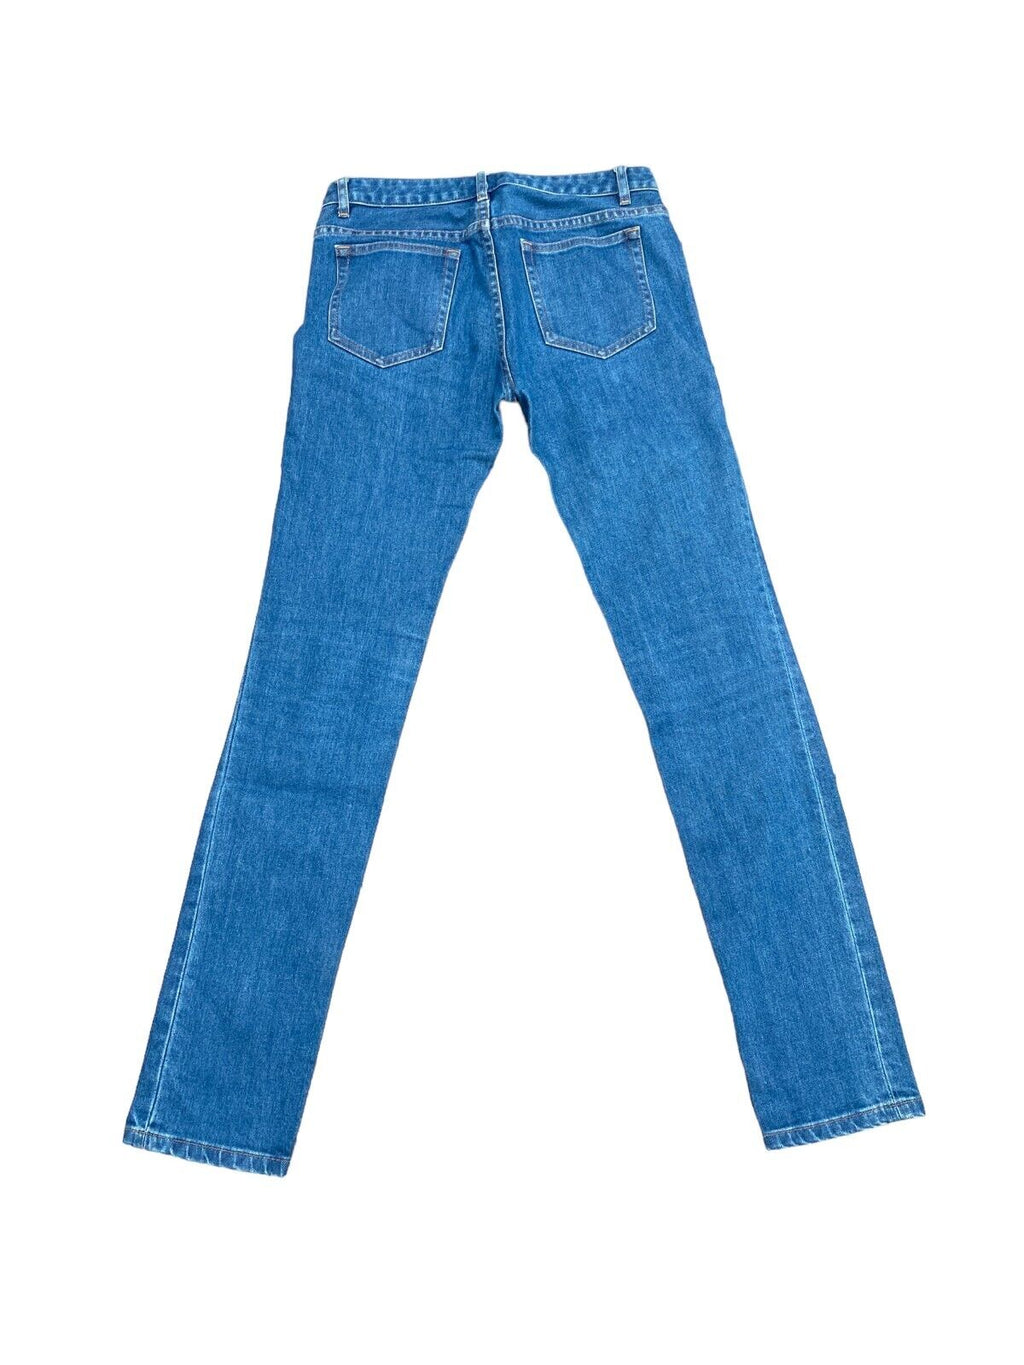 Jean Etroit Standard  Denim Jeans